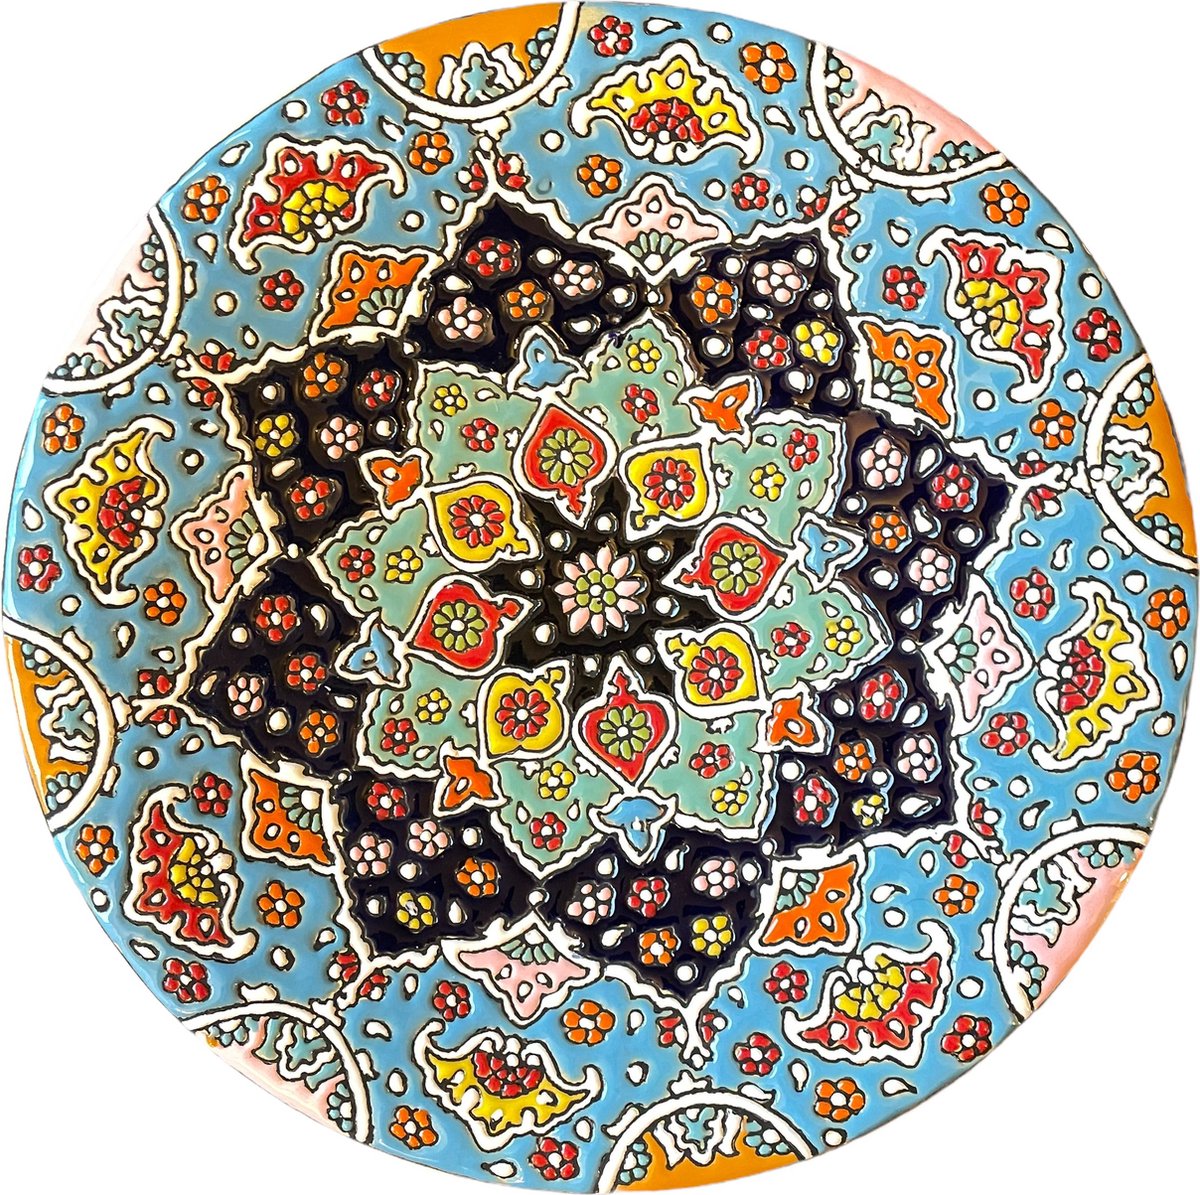 Perzisch keramisch bord - Persis Treasures -30cm - Uniek bloemig Perzisch patroon